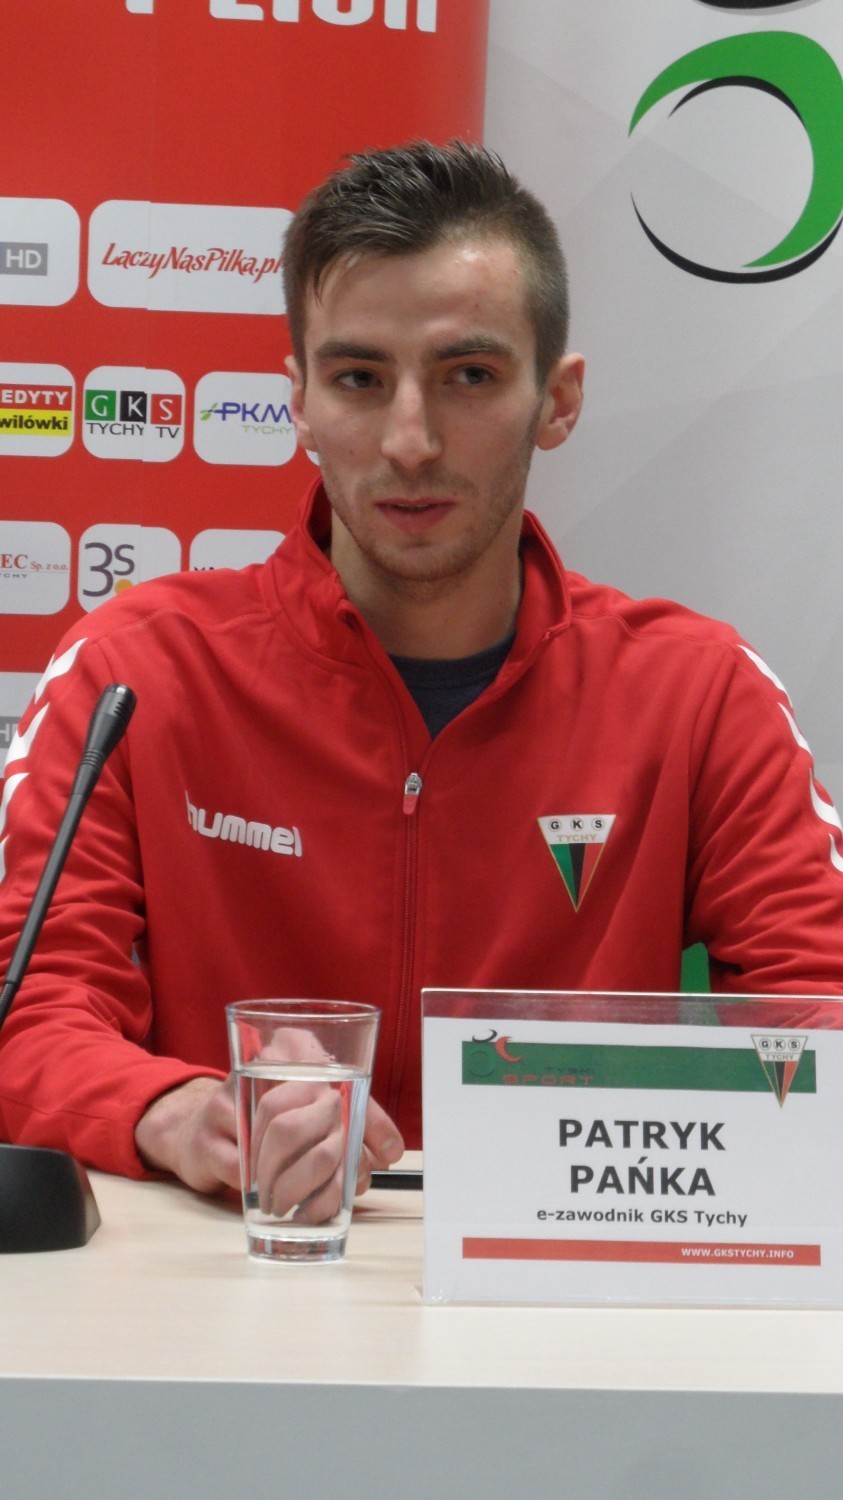 Patryk "Paniol" Pańka, e-zawodnik GKS Tychy